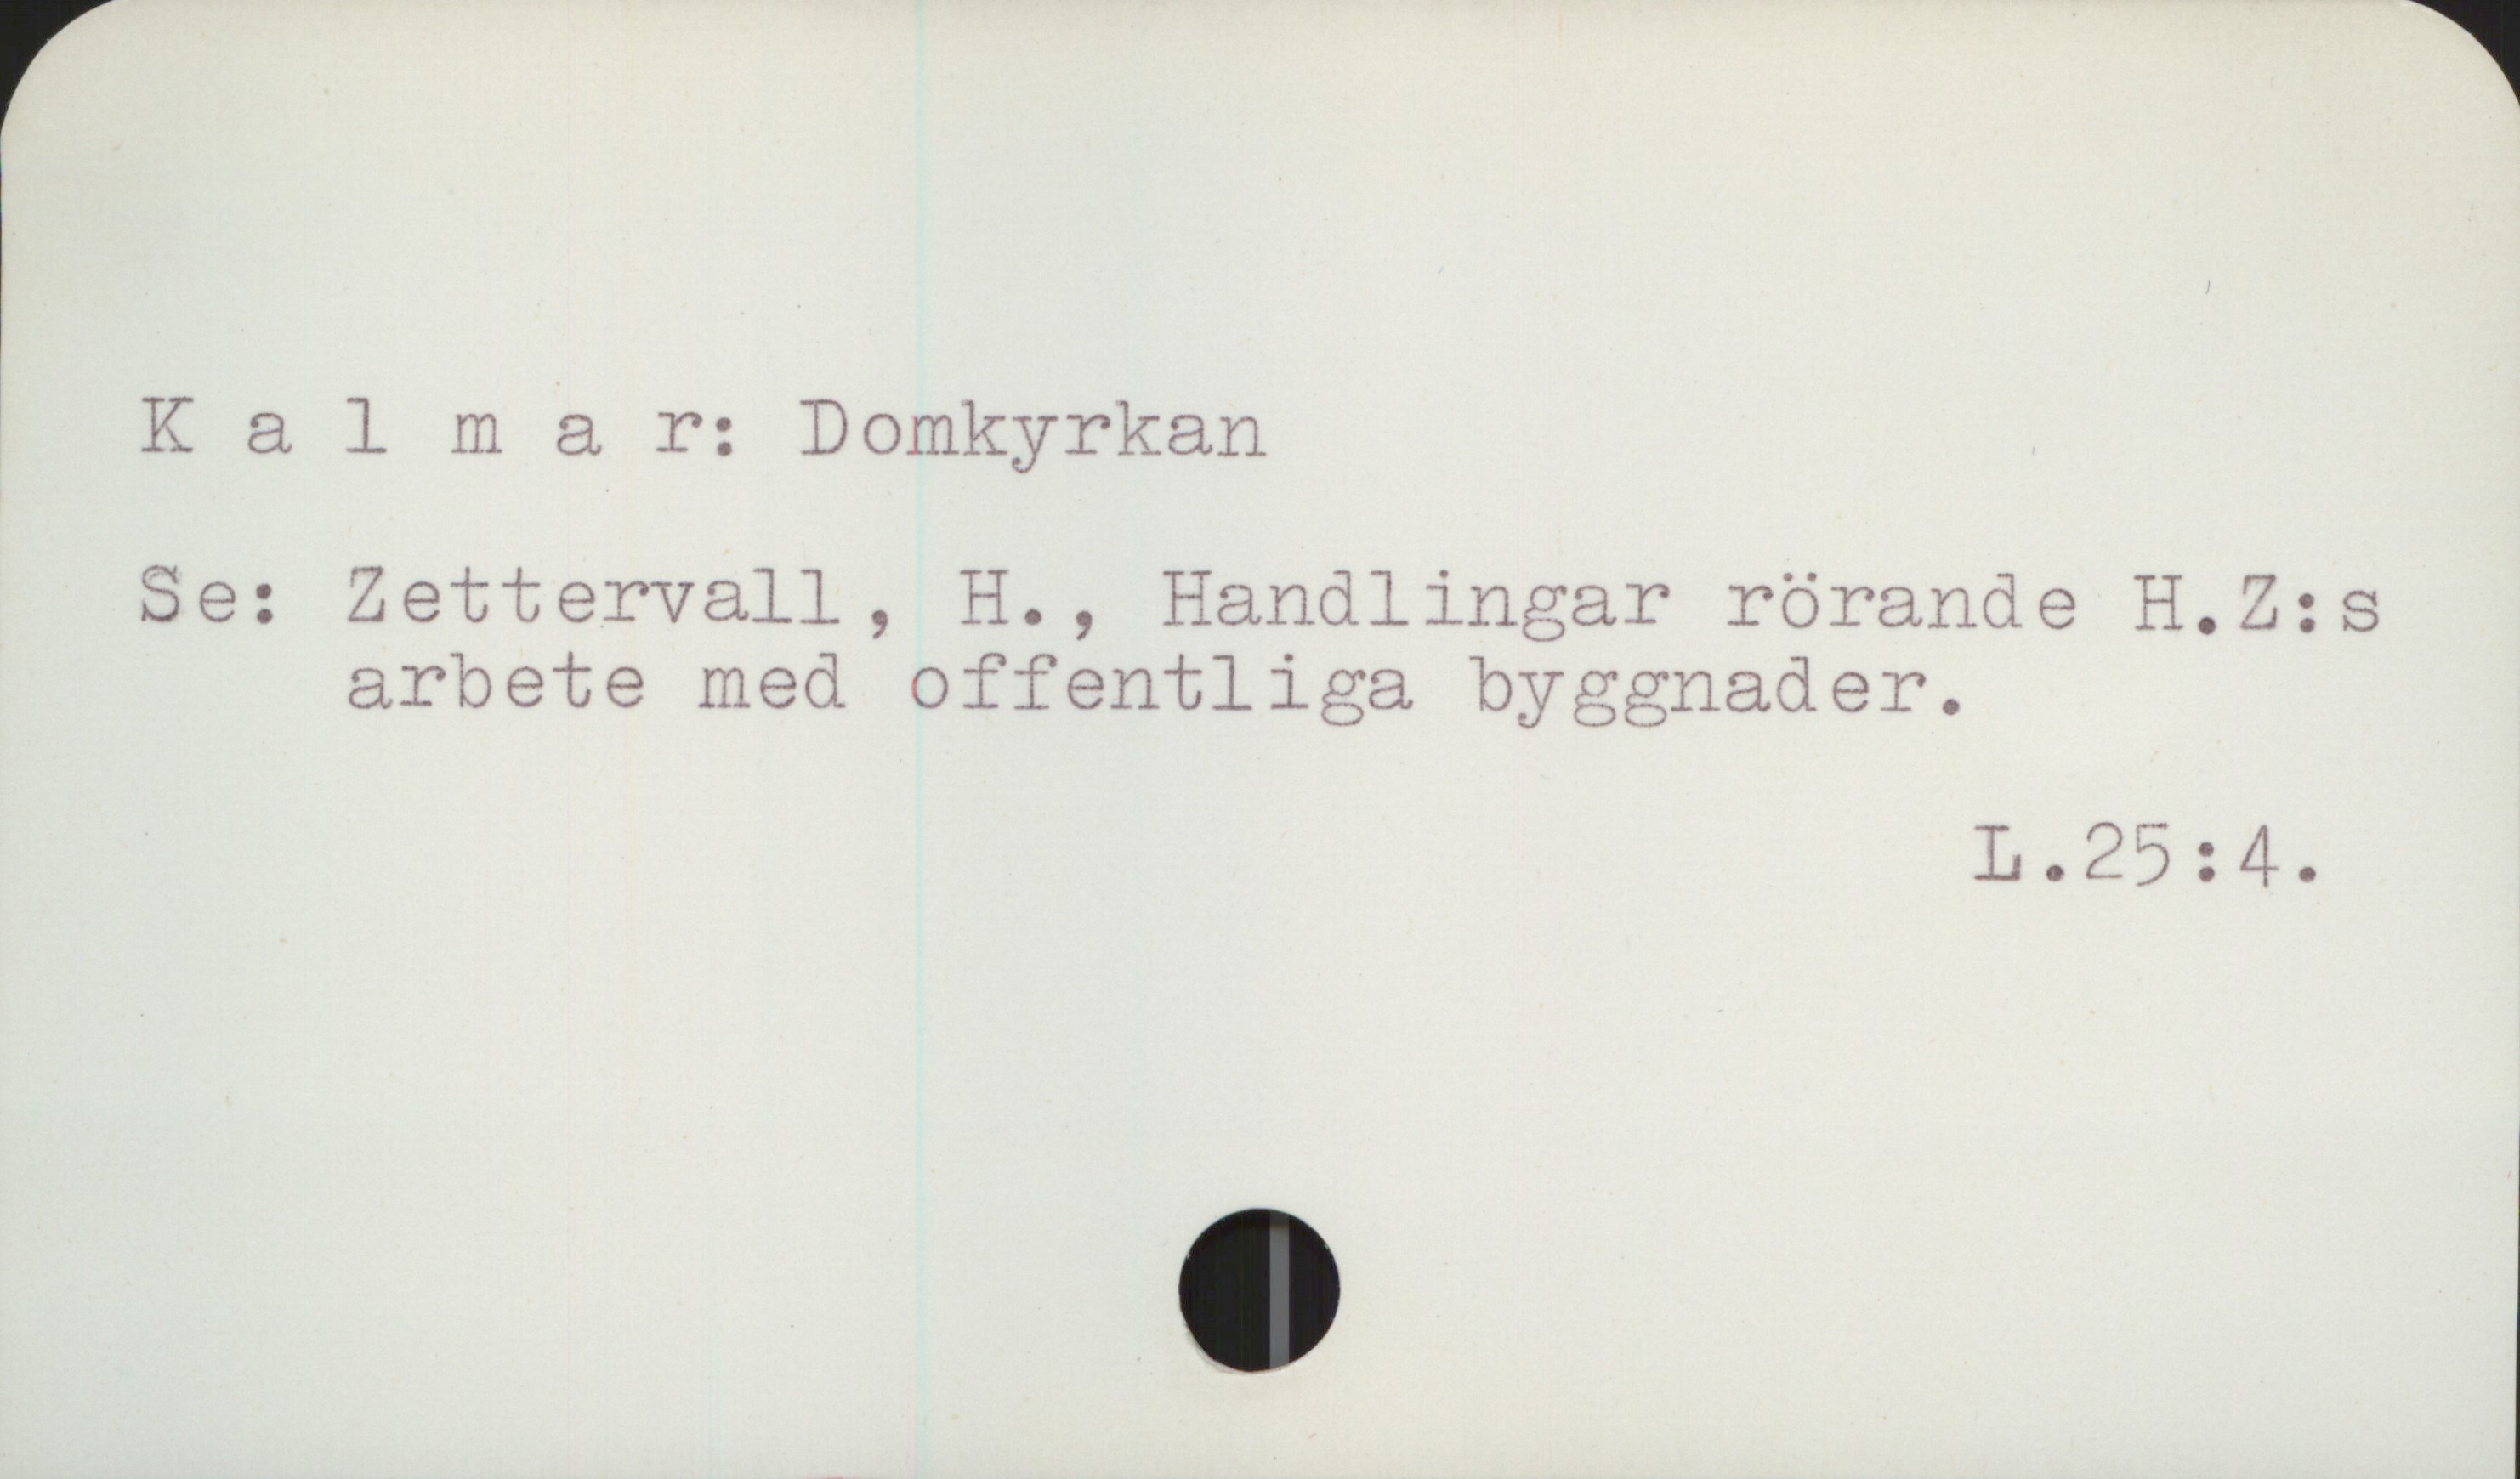  Kalmar: Domkyrkan
Se: Zettervall, H., Handlingar rörande H.Z:s
arbete med offentliga byggnader.
L. 25 : 4 .

